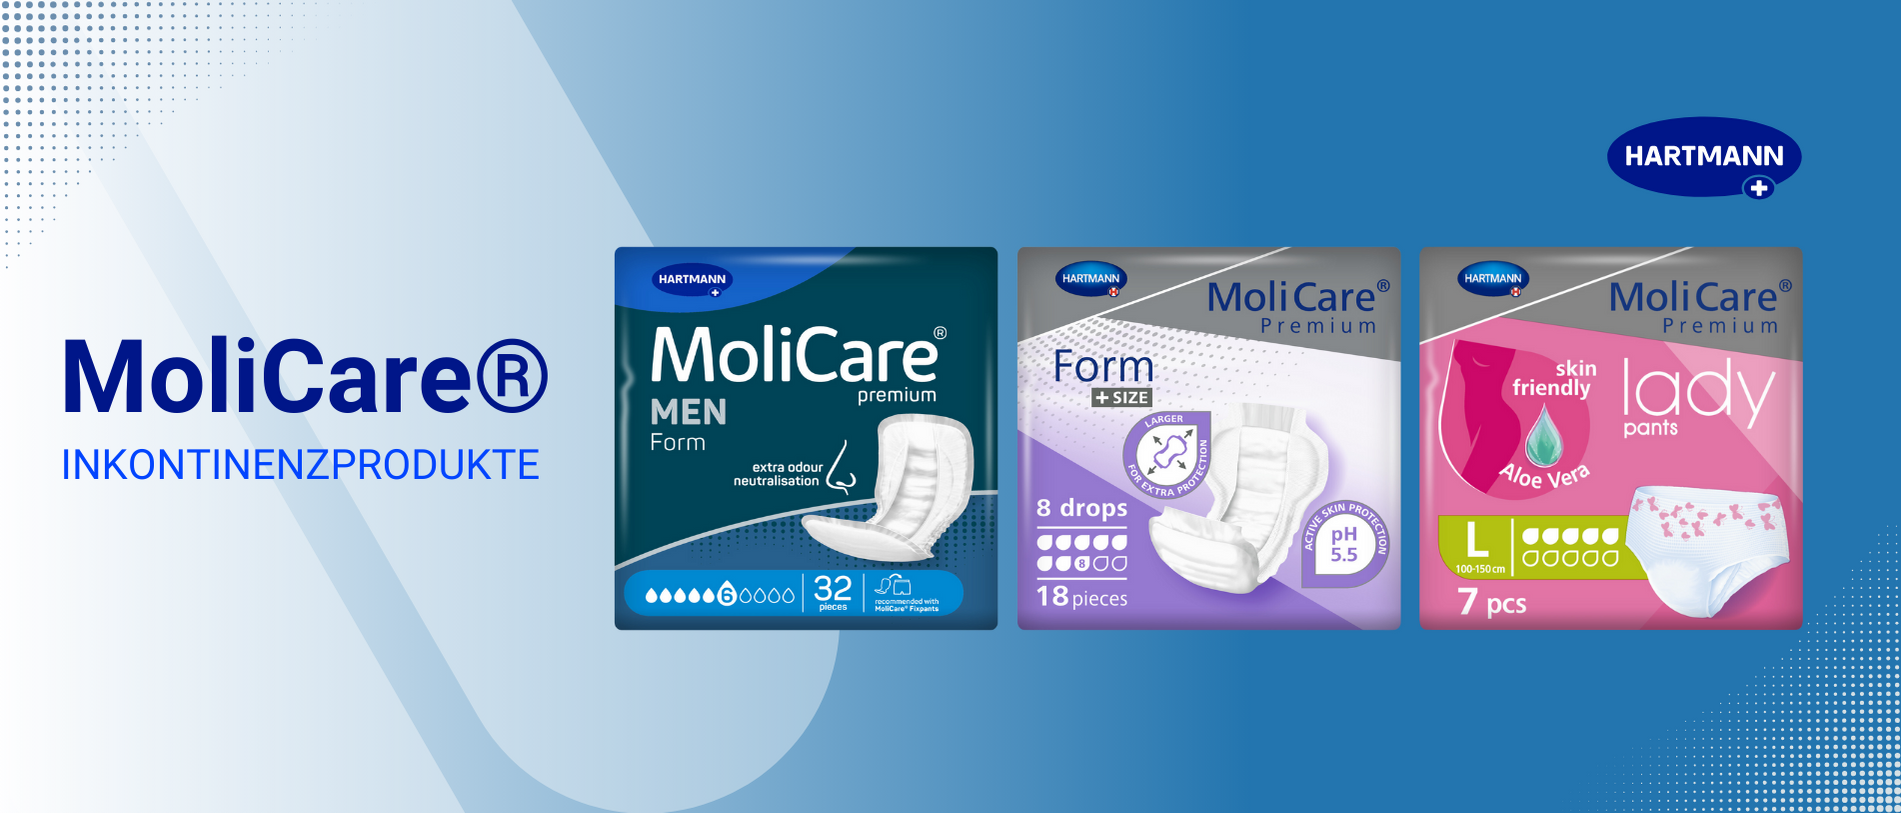 Ein Werbebild für MoliCare® Inkontinenzprodukte mit drei Packungen: MoliCare Men Pants (32 Stück), MoliCare Form Premium 8 Tropfen Slips (18 Stück) und MoliCare Premium Lady Pants (7 Stück). Oben rechts ist das Hartmann-Logo abgebildet.